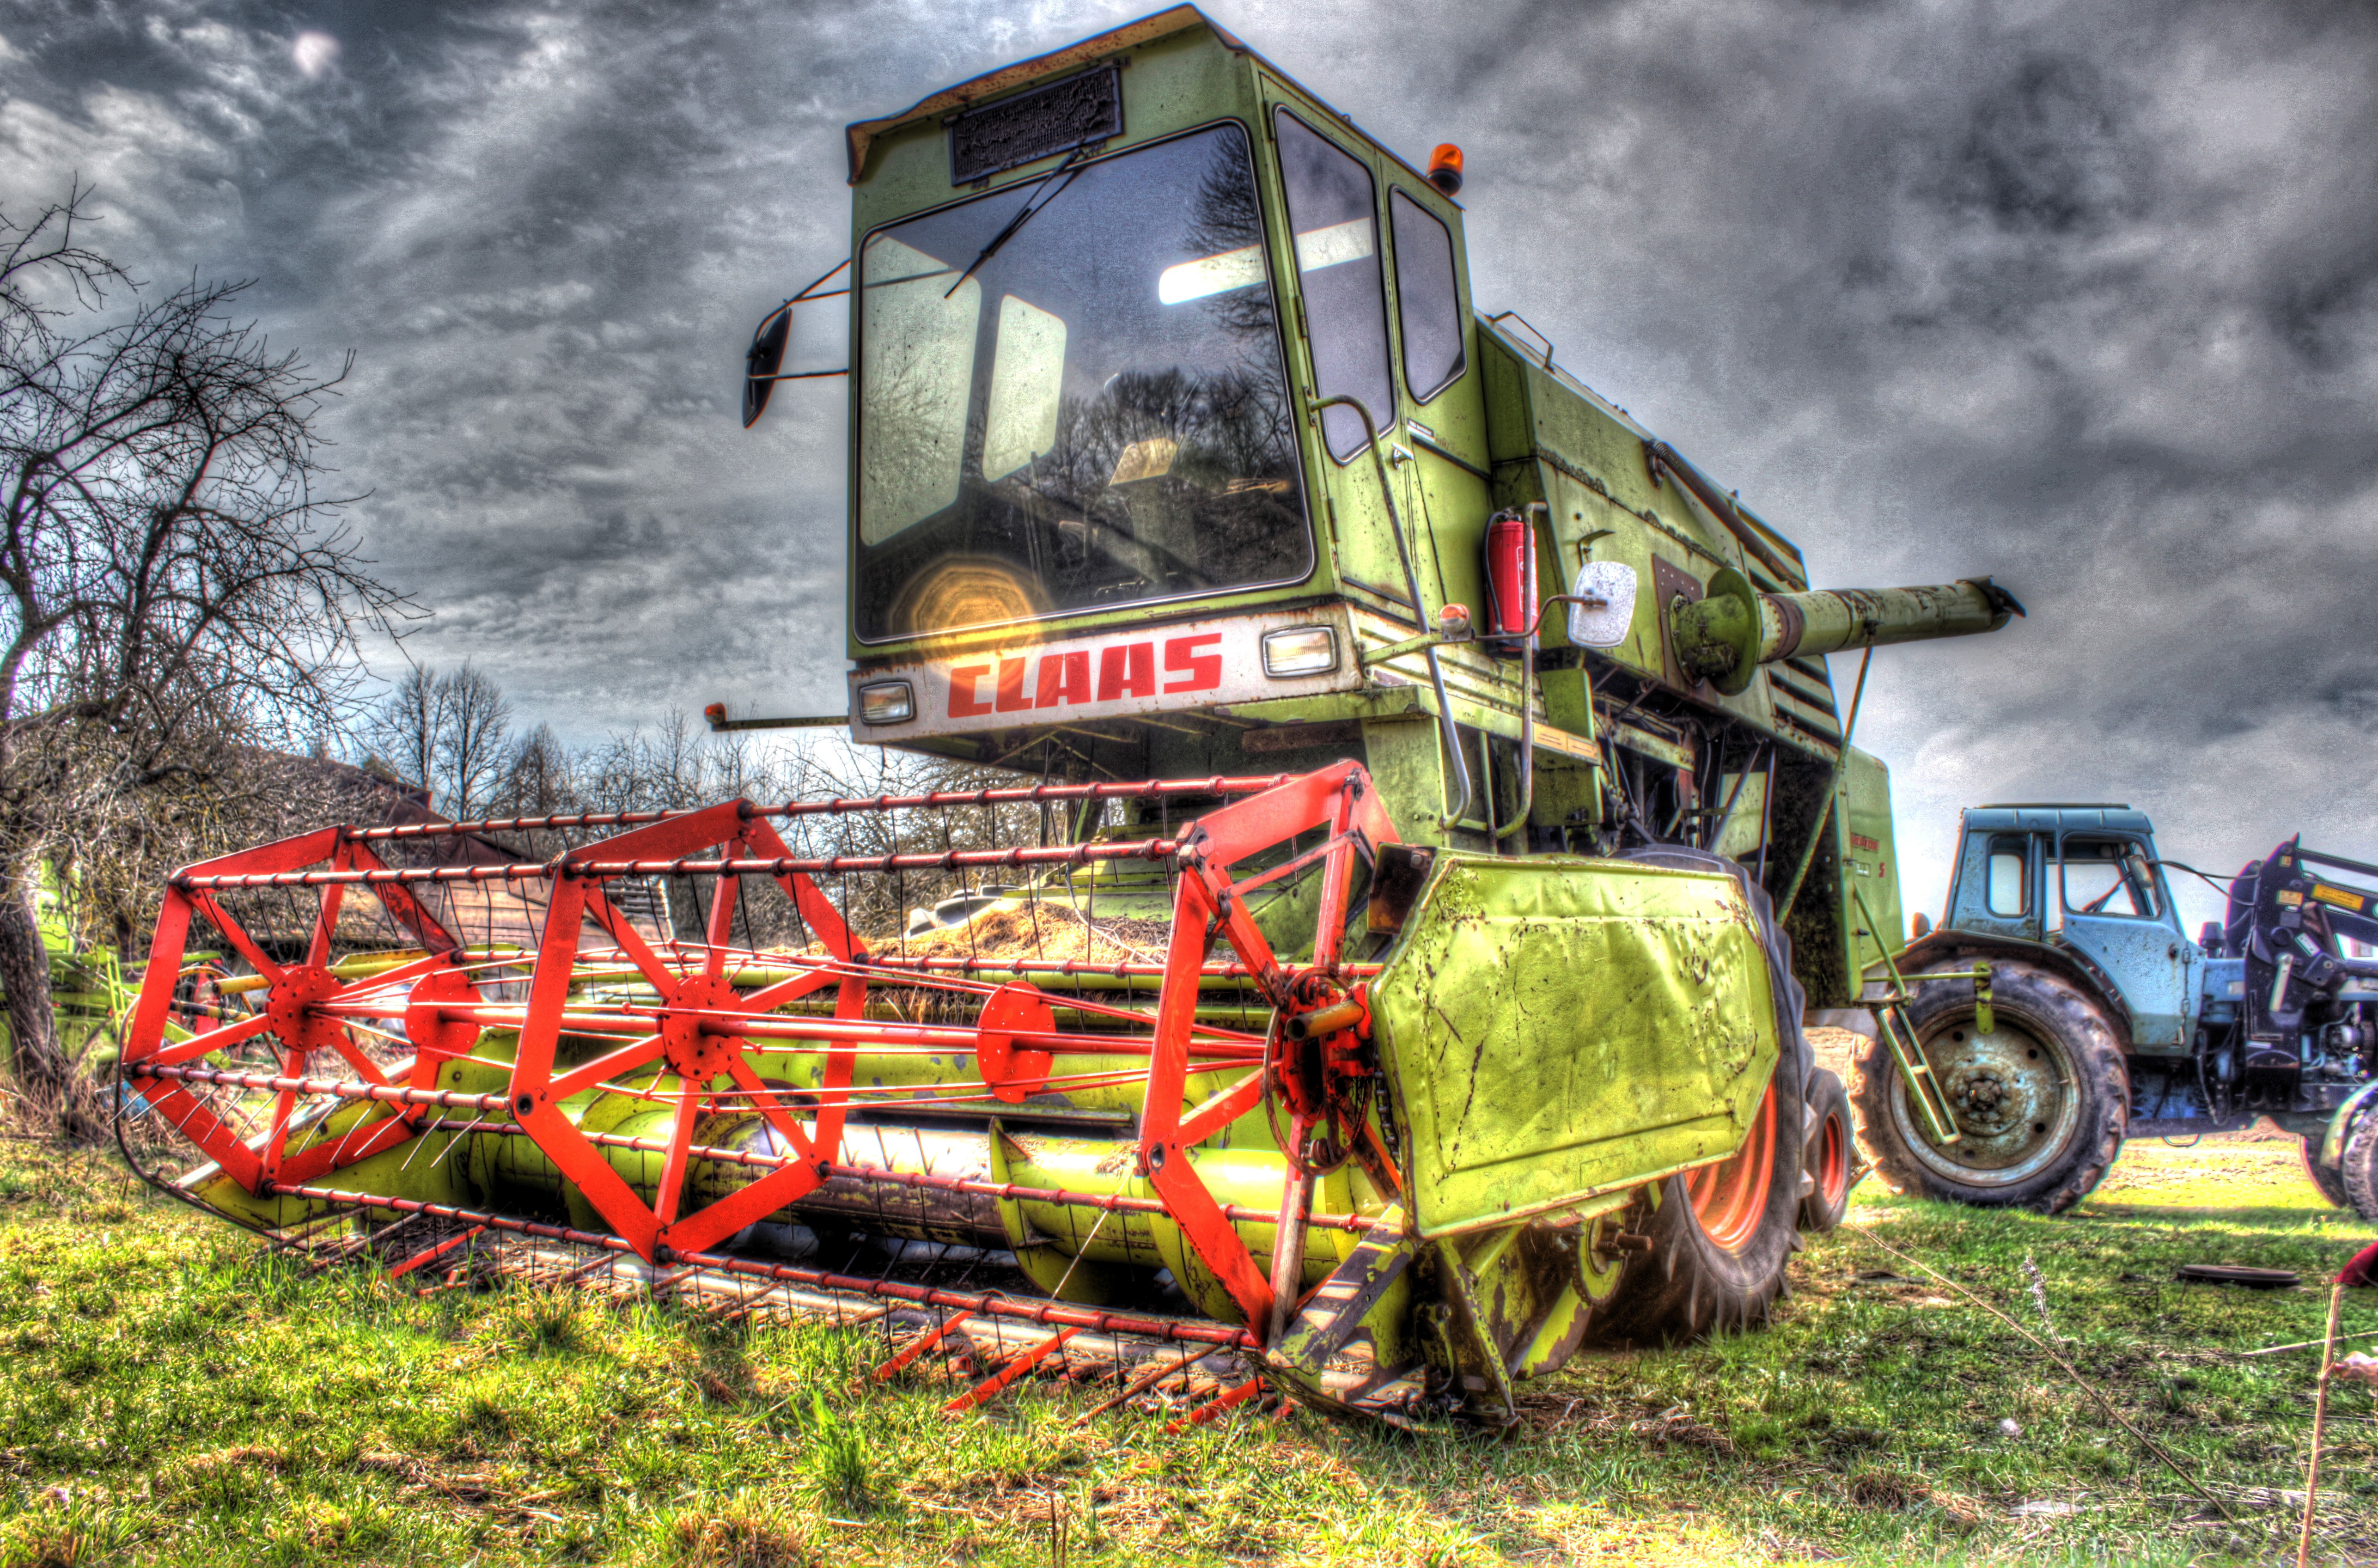 HDR Tractors Claas Belarus Harvester Heavy Equipment 5146x3393